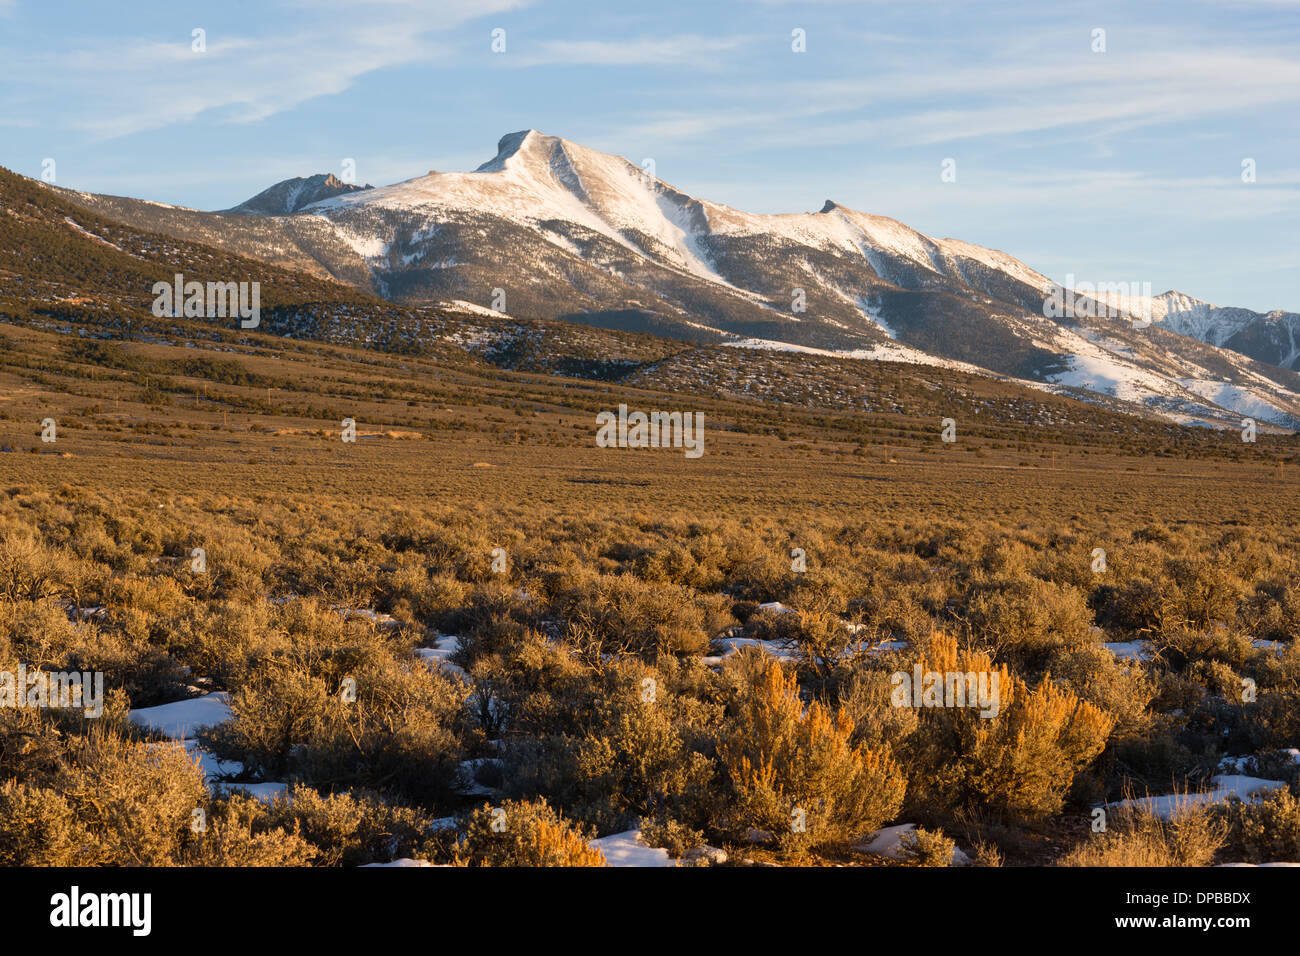 Paysage d'hiver dans la région du Grand Bassin, Nevada Paysage Banque D'Images